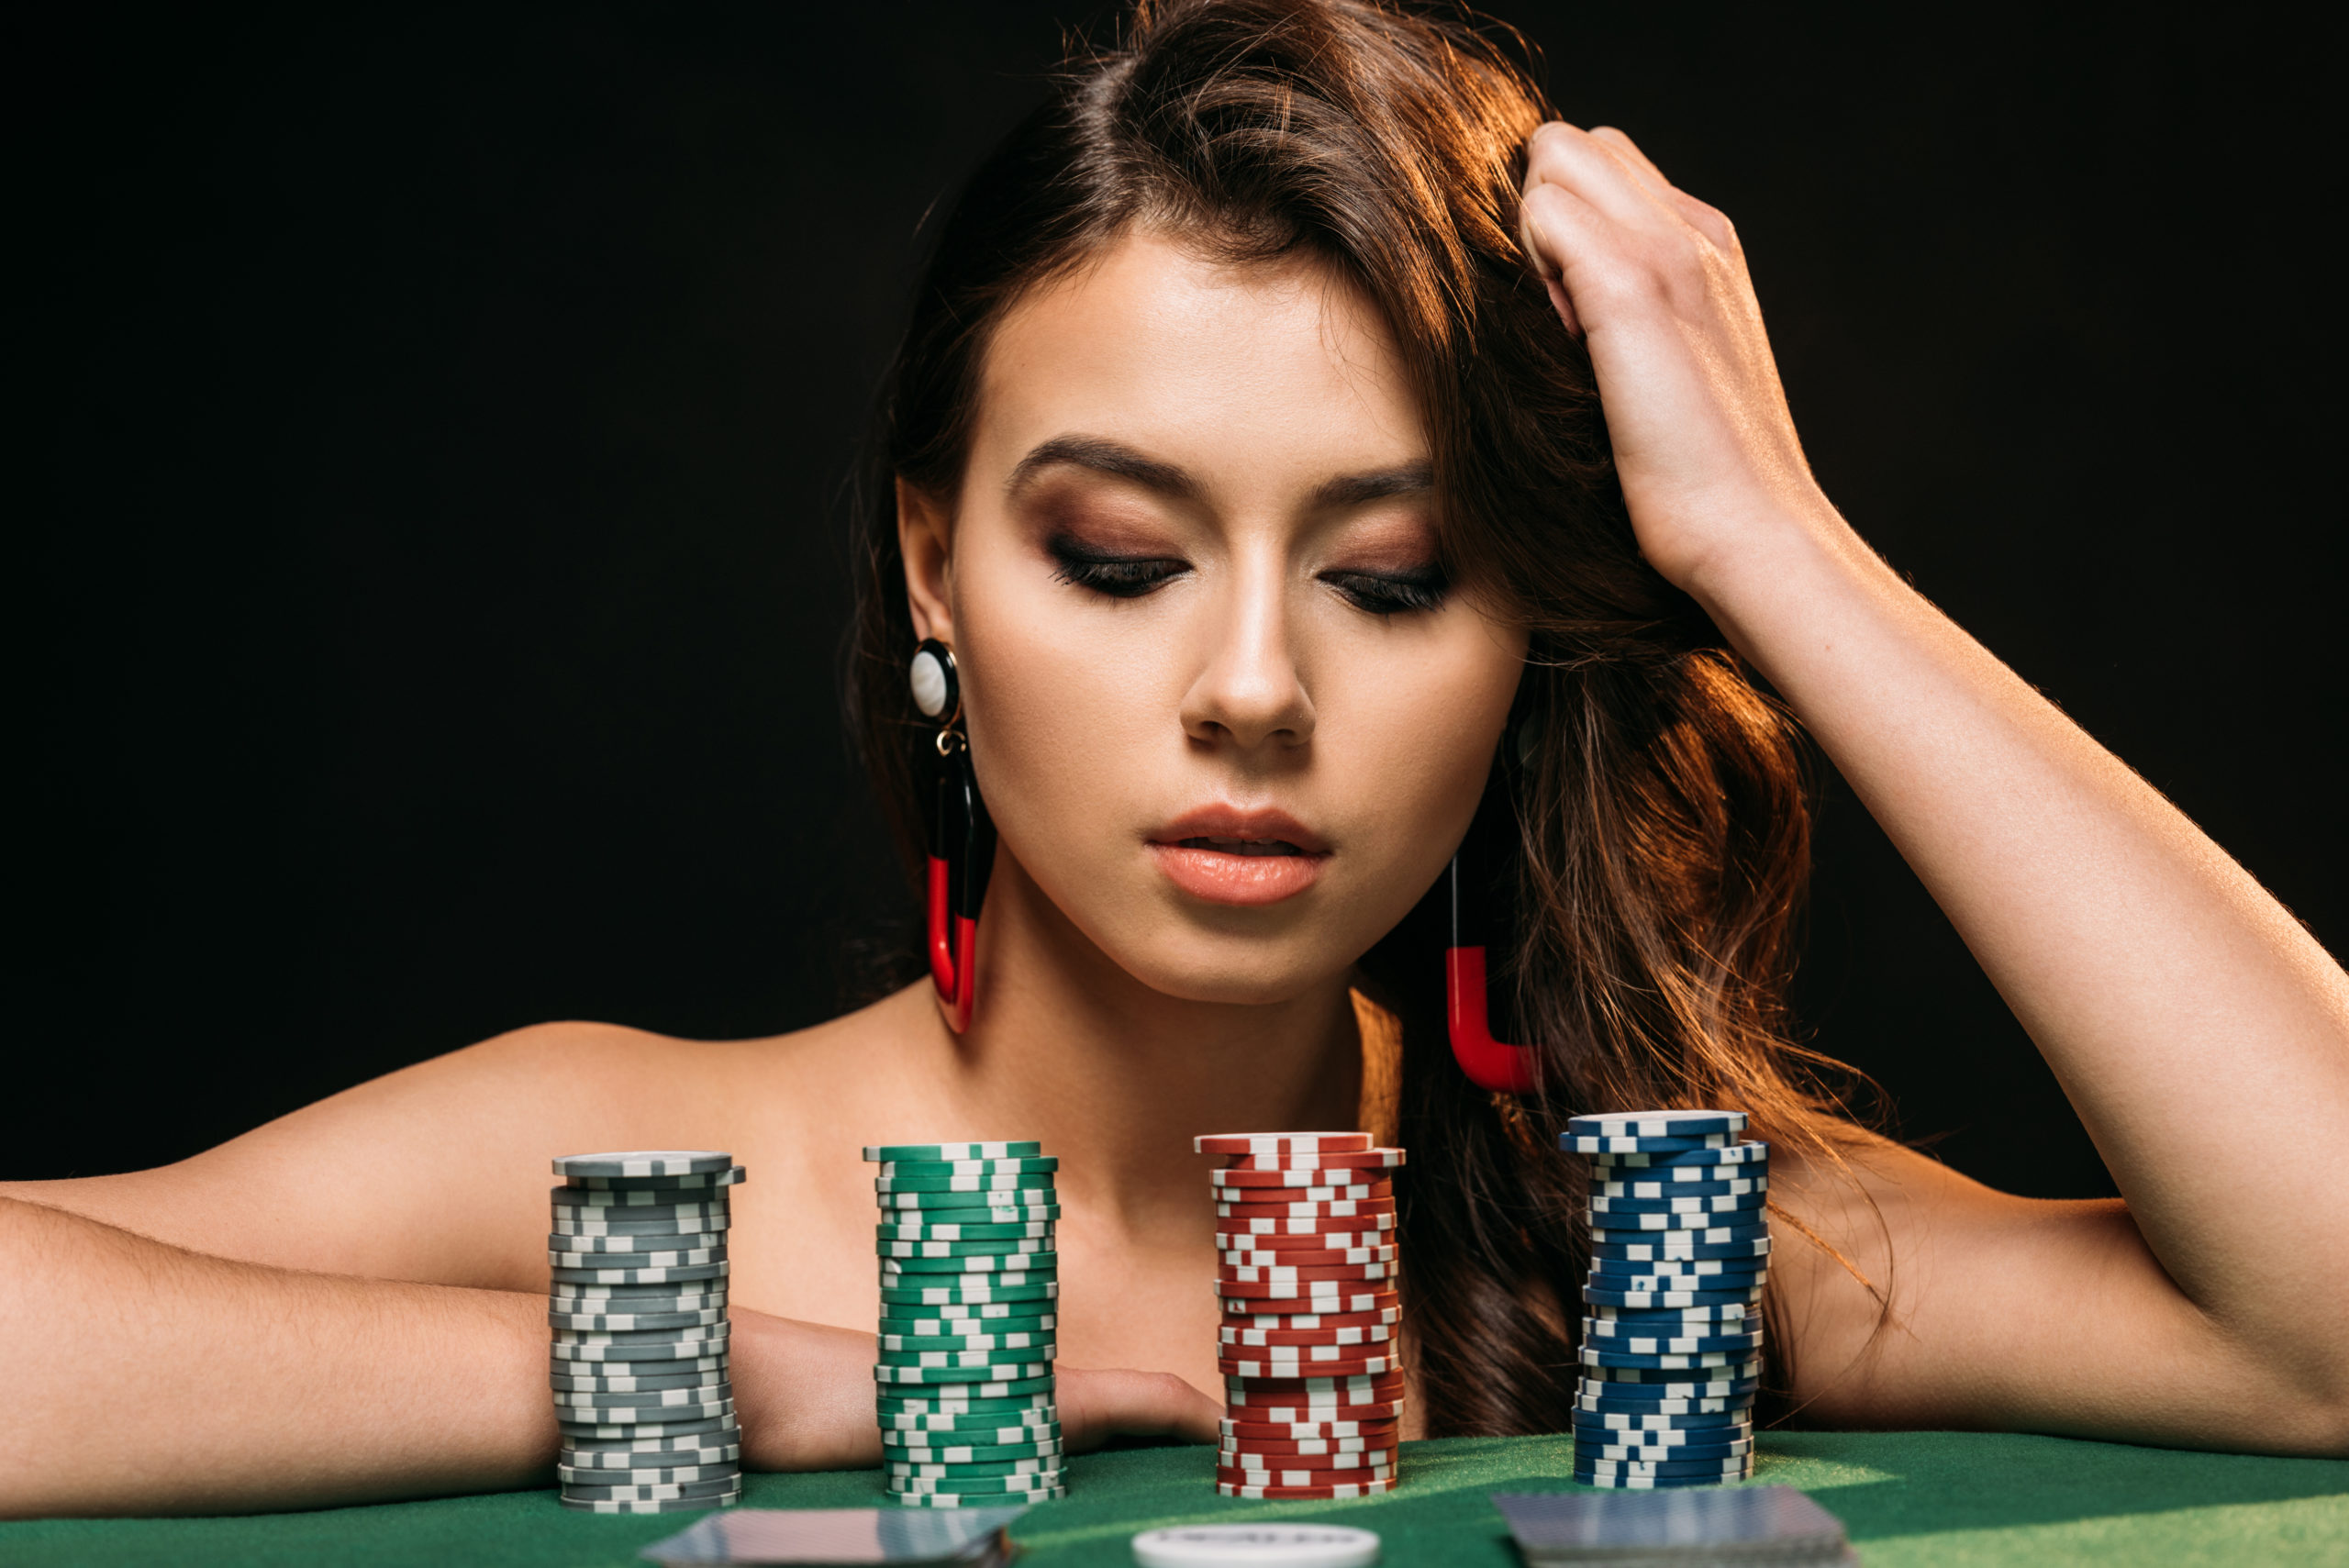 Nováčikovia v kasíne: 7 vecí, na ktorých „horia“ najviac (2.)